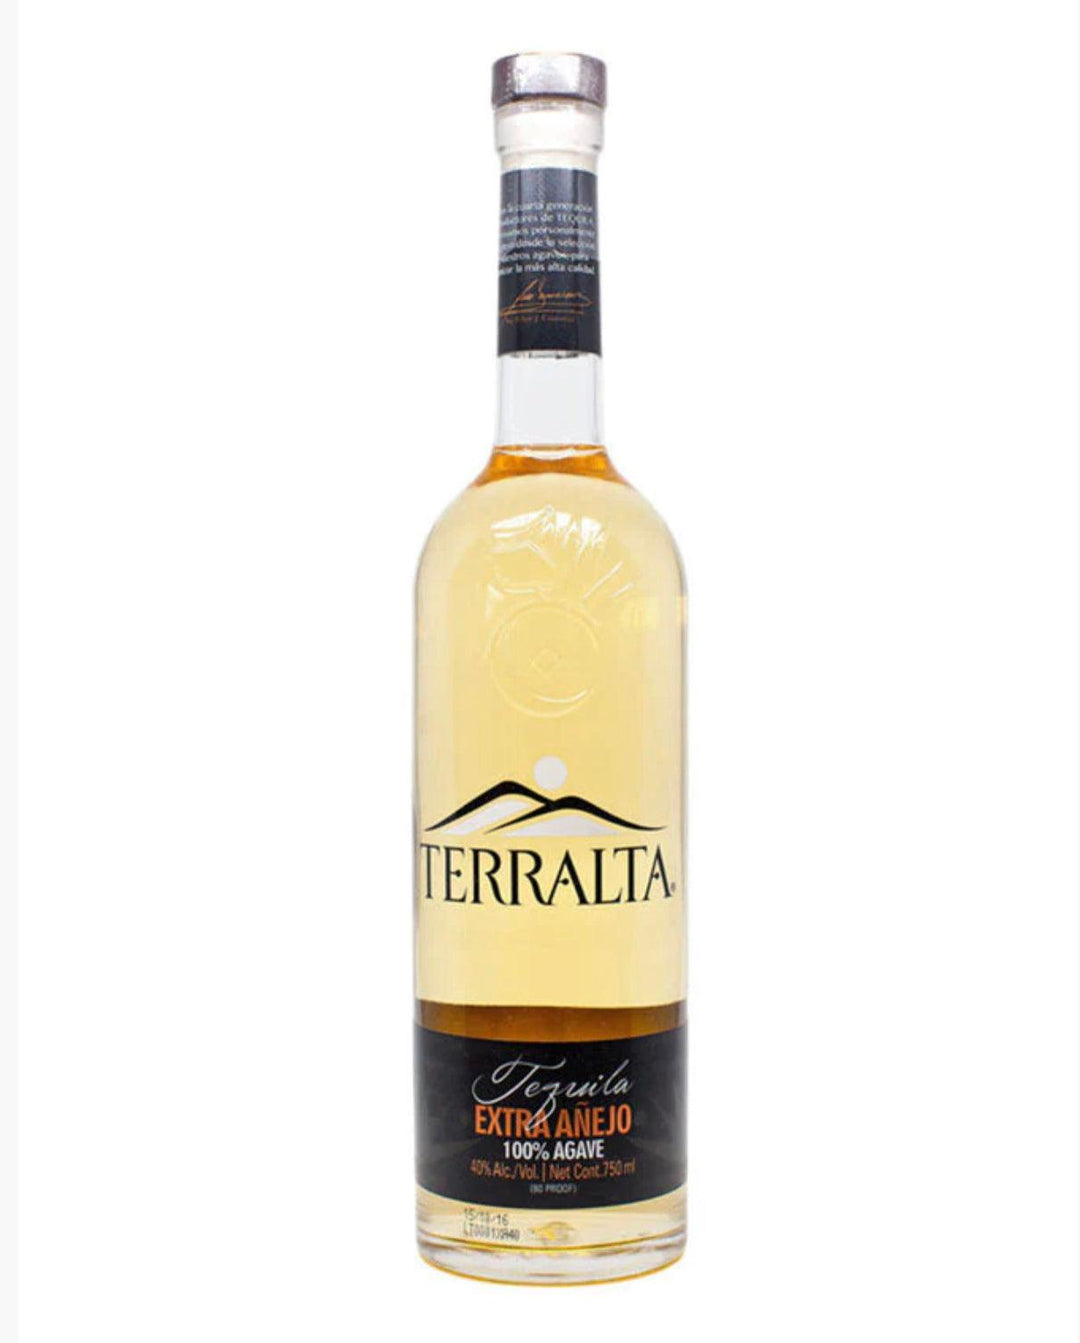 Terralta Extra Anejo Tequila - Liquor Luxe